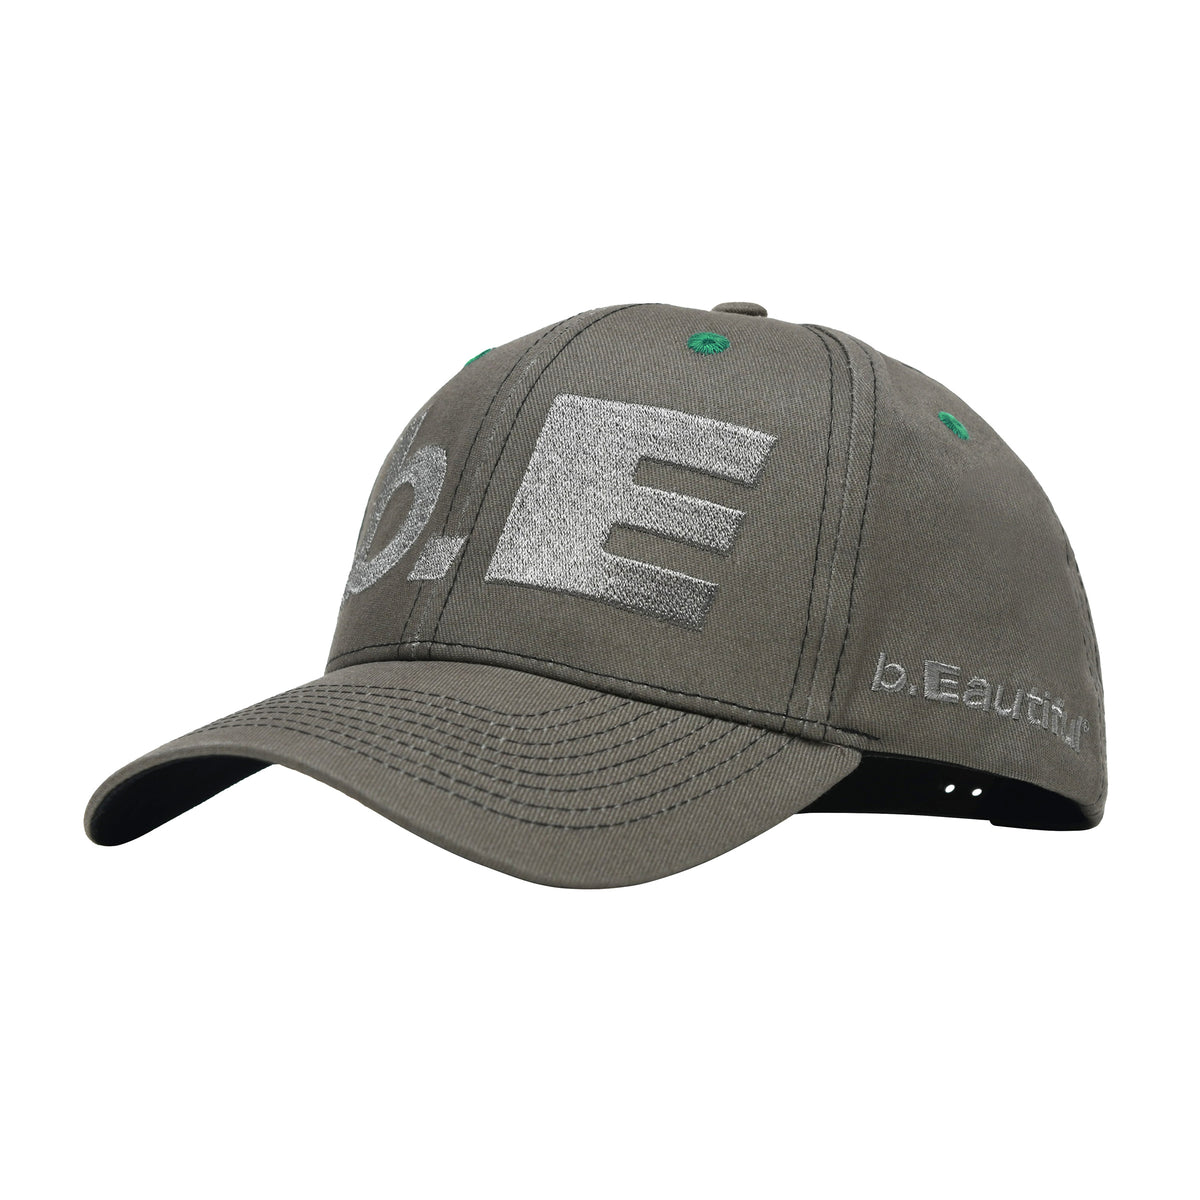 b.E Hat (Charcoal)